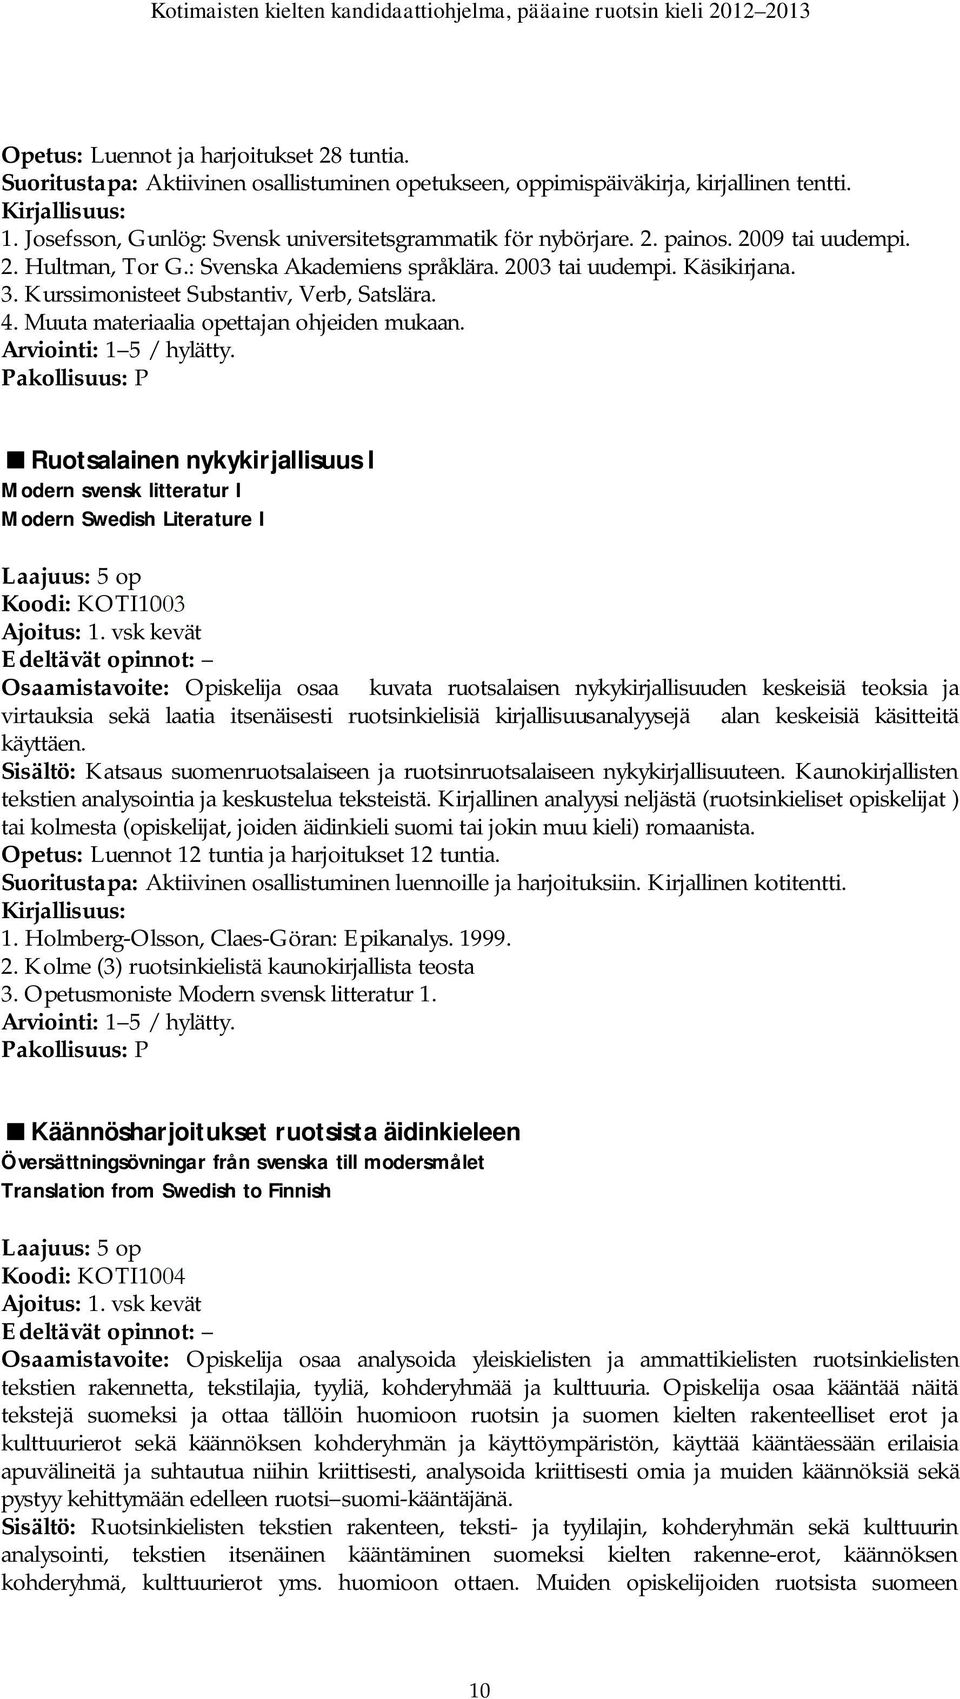 Muuta materiaalia opettajan ohjeiden mukaan. Ruotsalainen nykykirjallisuus I Modern svensk litteratur I Modern Swedish Literature I Koodi: KOTI1003 Ajoitus: 1.